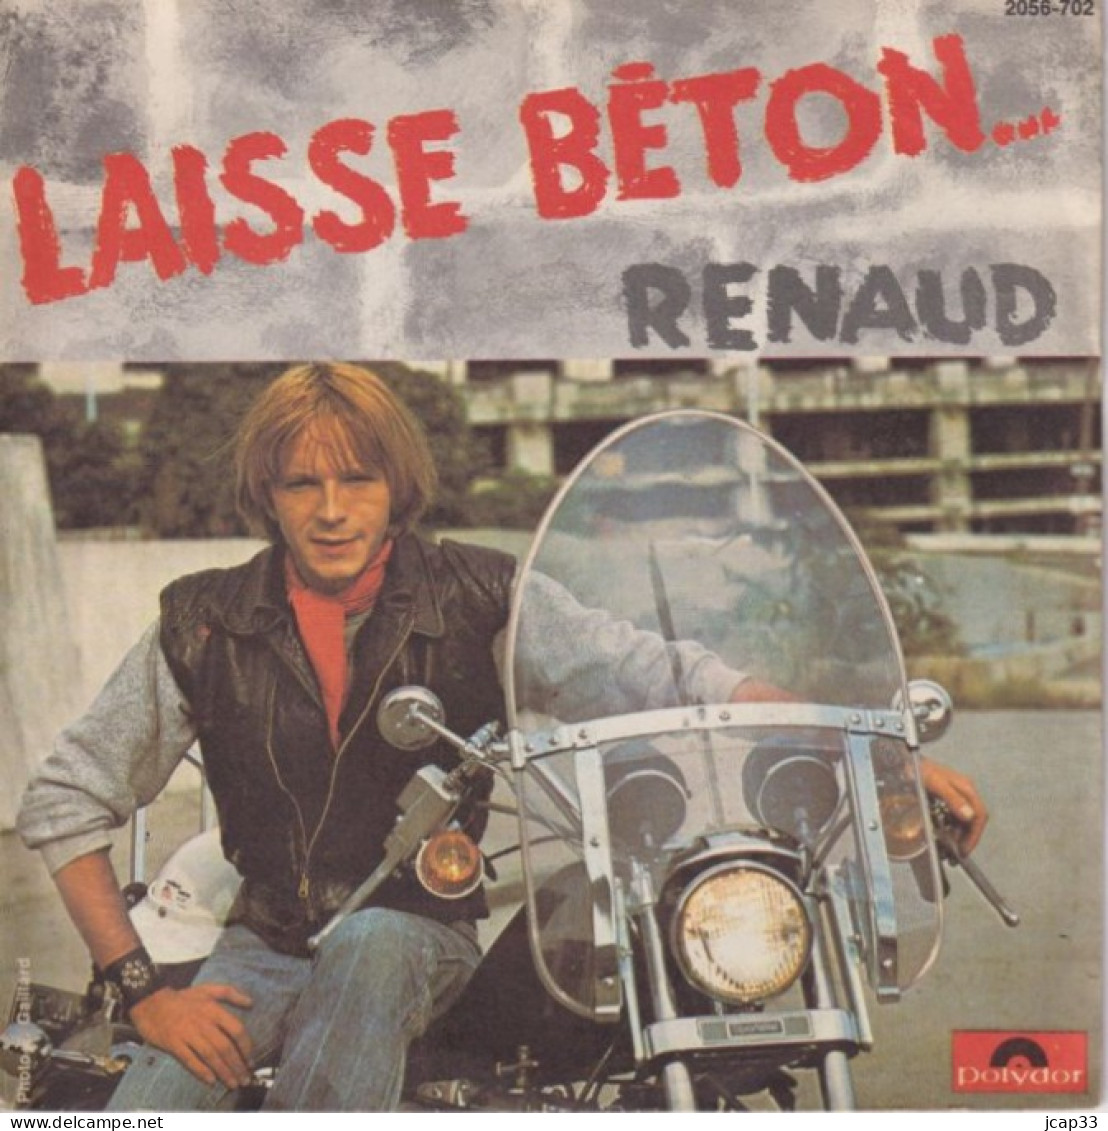 RENAUD  -  LAISSE BETON  -  1977  - - Autres - Musique Française